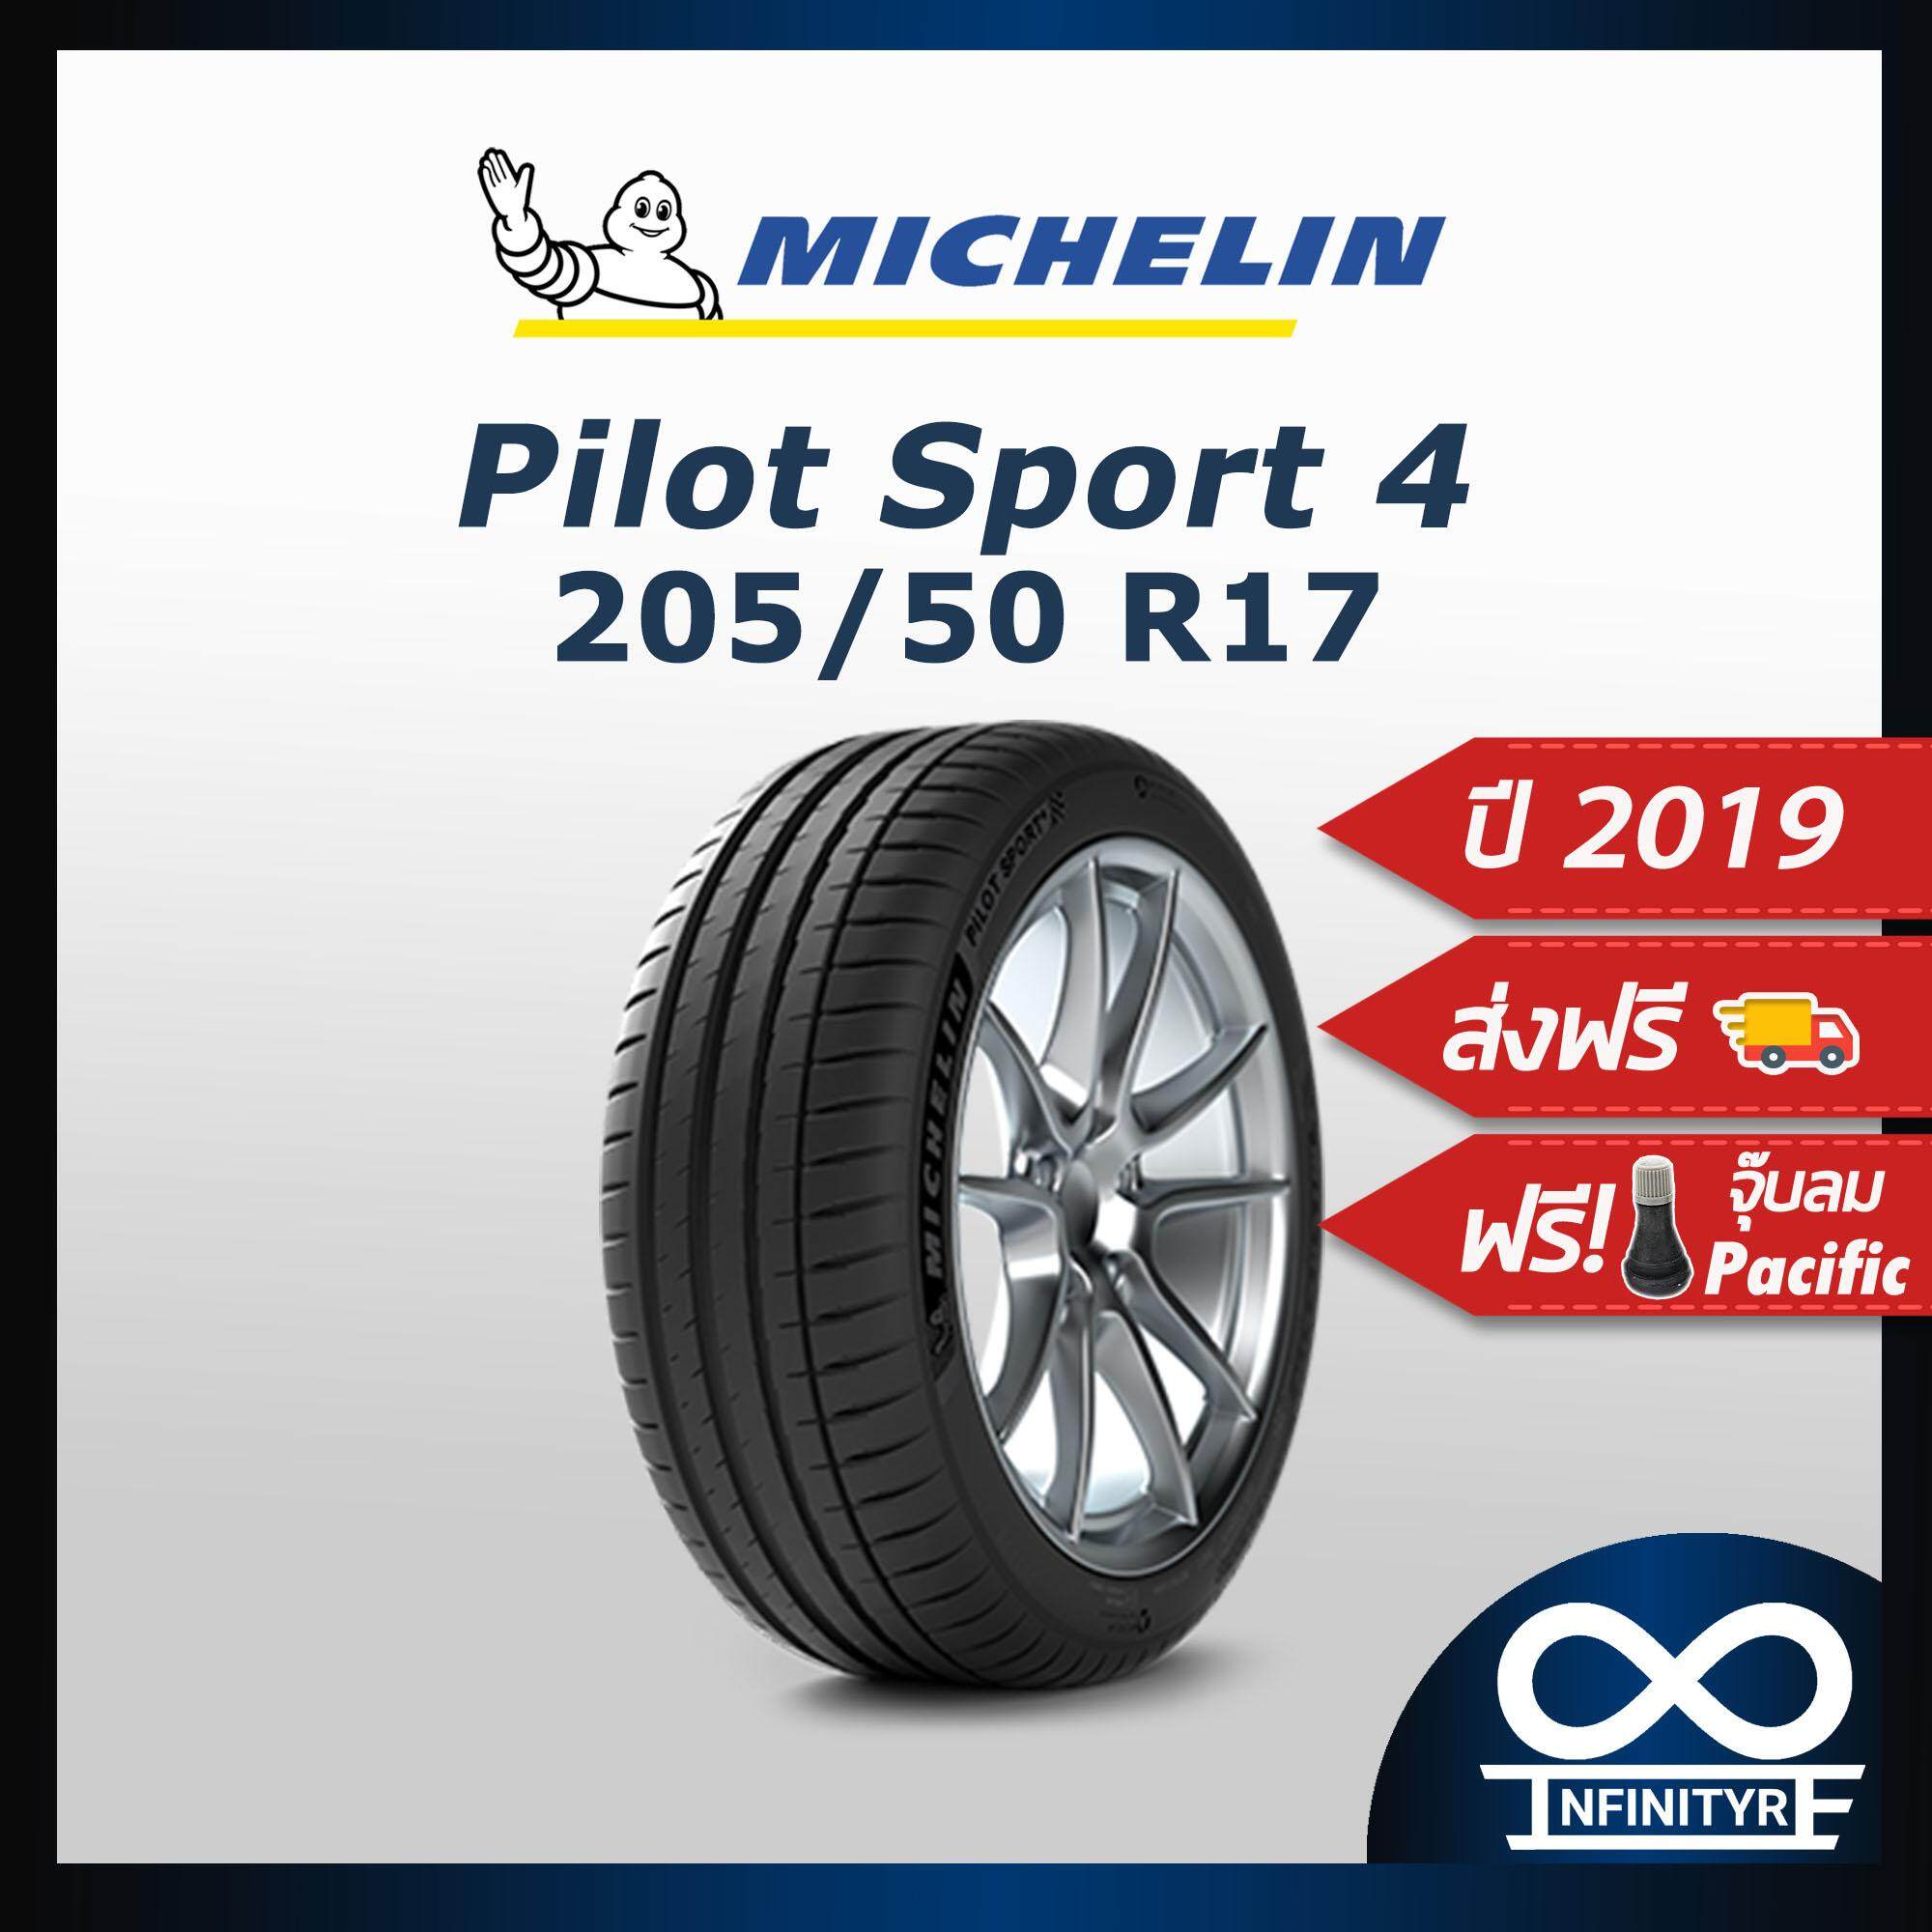 ประกันภัย รถยนต์ 2+ นครสวรรค์ 205/50R17 Michelin มิชลิน รุ่น Pilot Sport4 (ปี2019) ฟรี! จุ๊บลมPacific เกรดพรีเมี่ยม